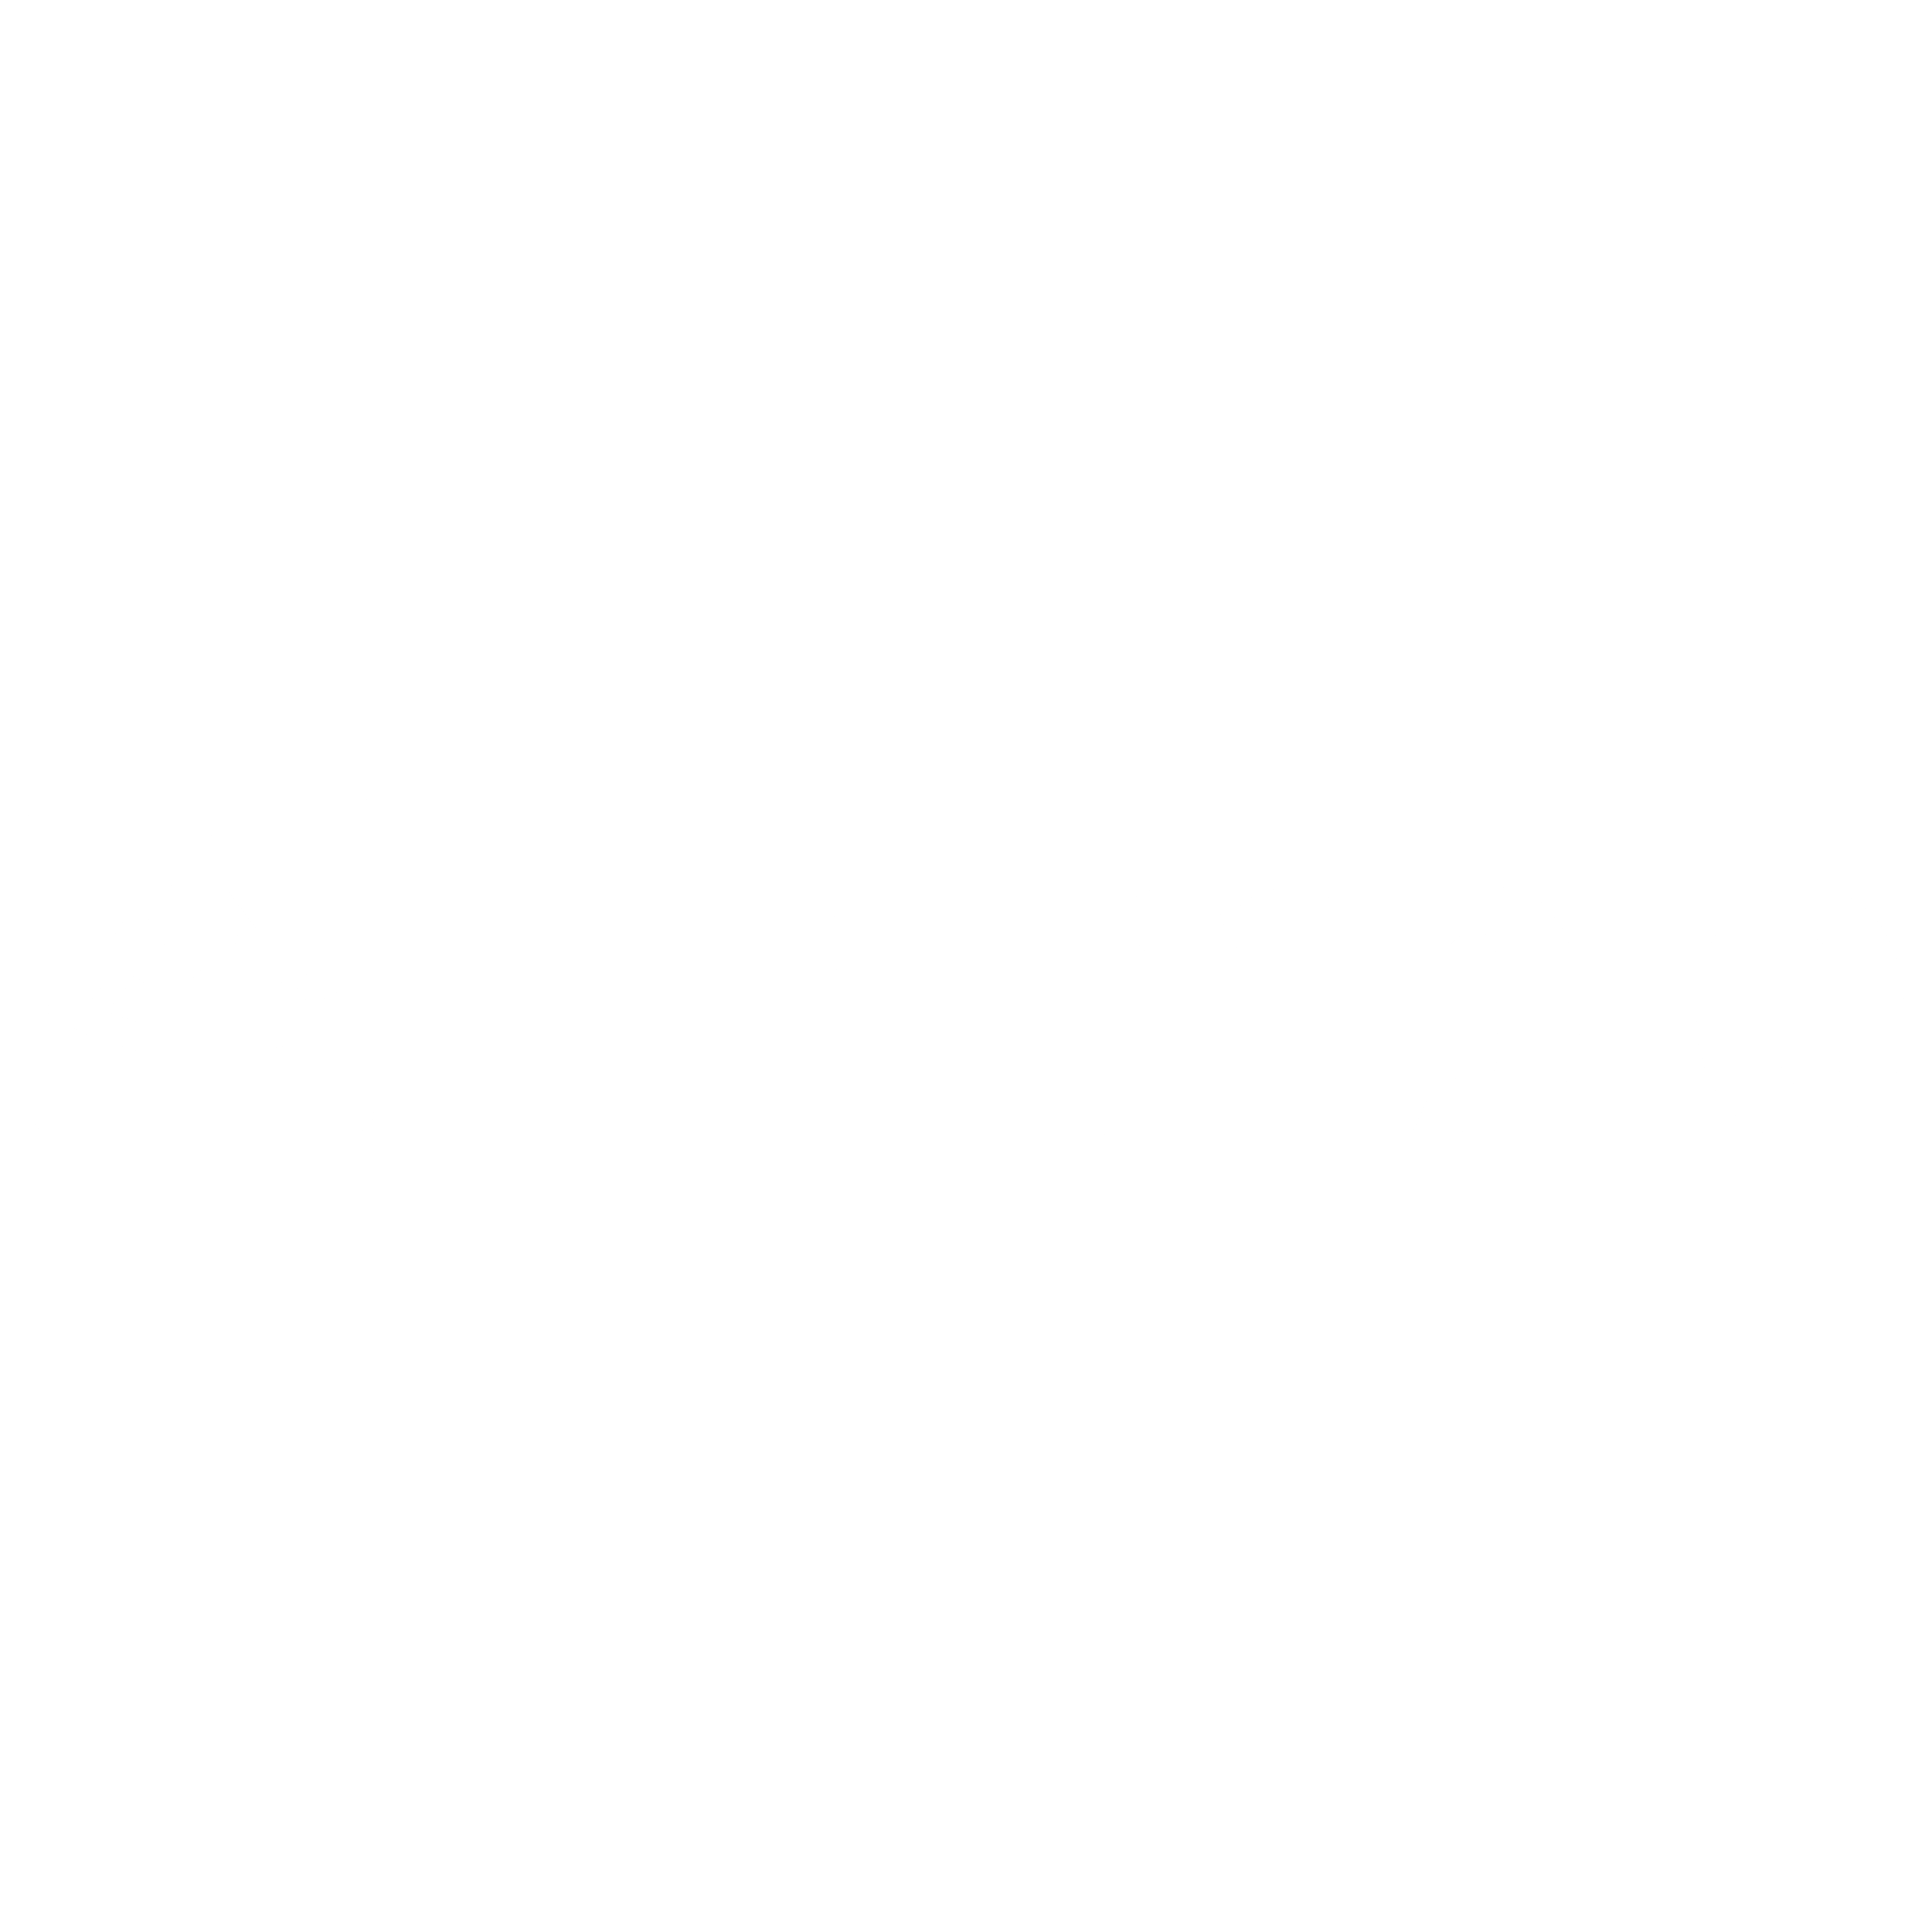 Trimble Logo - Trimble Logo PNG Transparent & SVG Vector